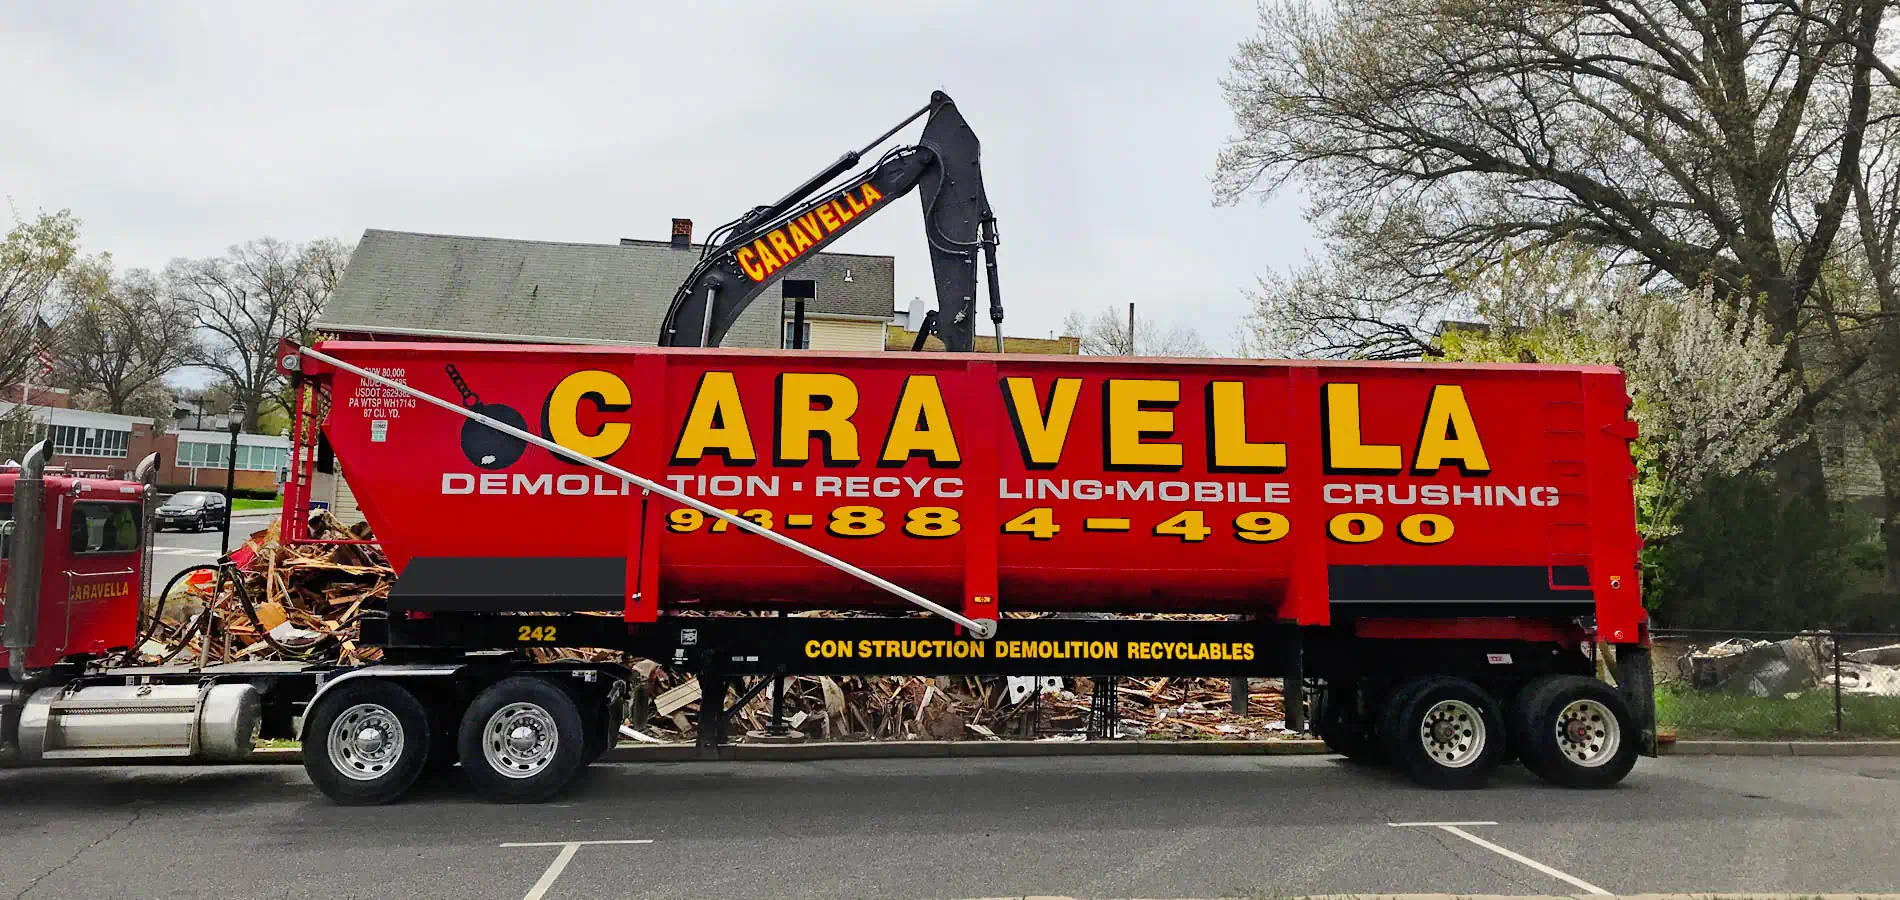 Demolition Services in Jersey City, NJ | Caravella Demolition